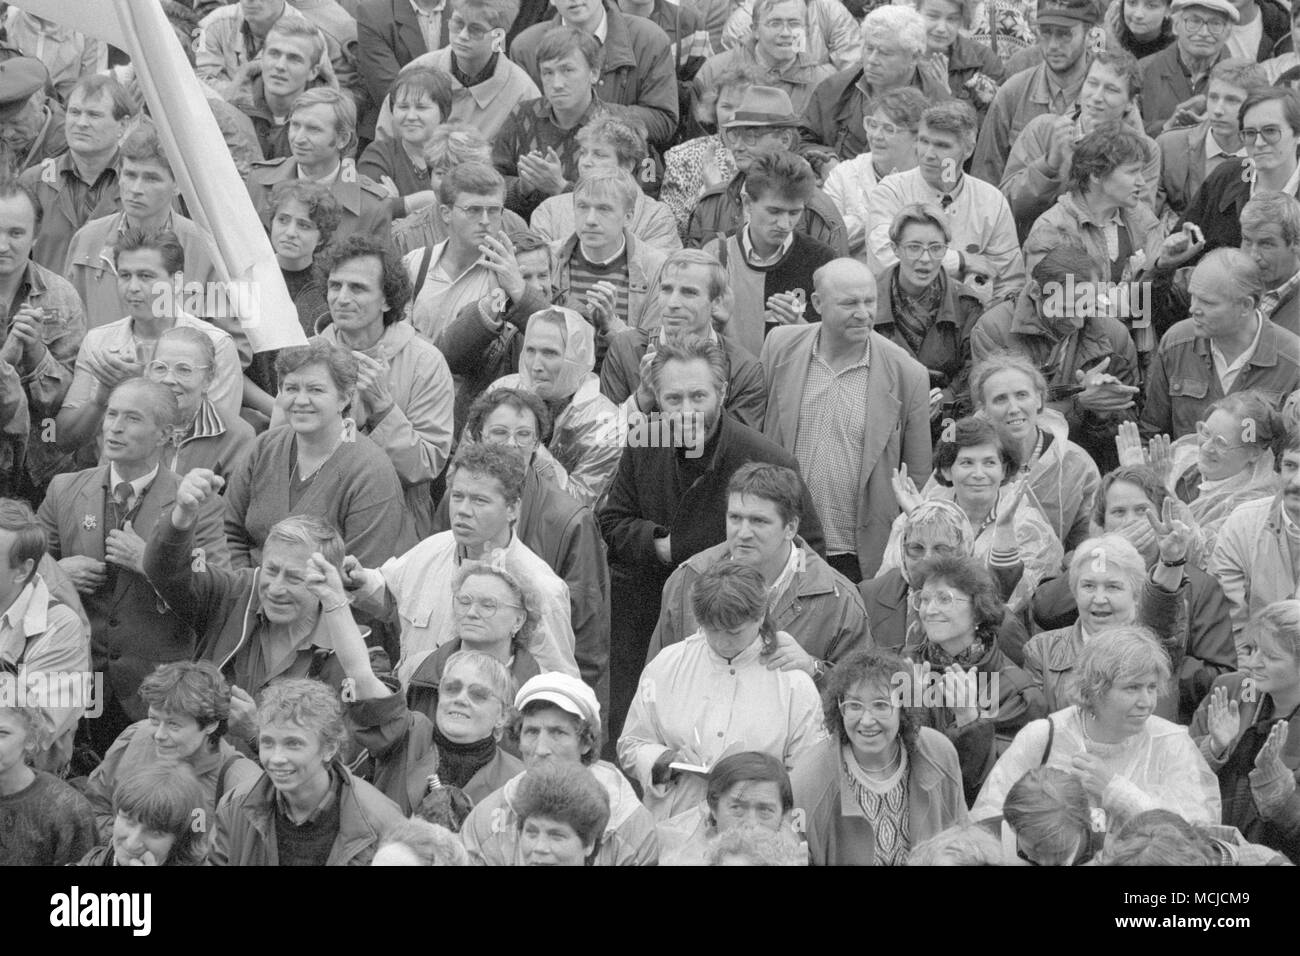 Moscú, URSS - Agosto 22, 1991: la gente en el rally de expresar sentimientos positivos en apoyo de eventos de pie en la plaza, cerca de la Casa Blanca Foto de stock